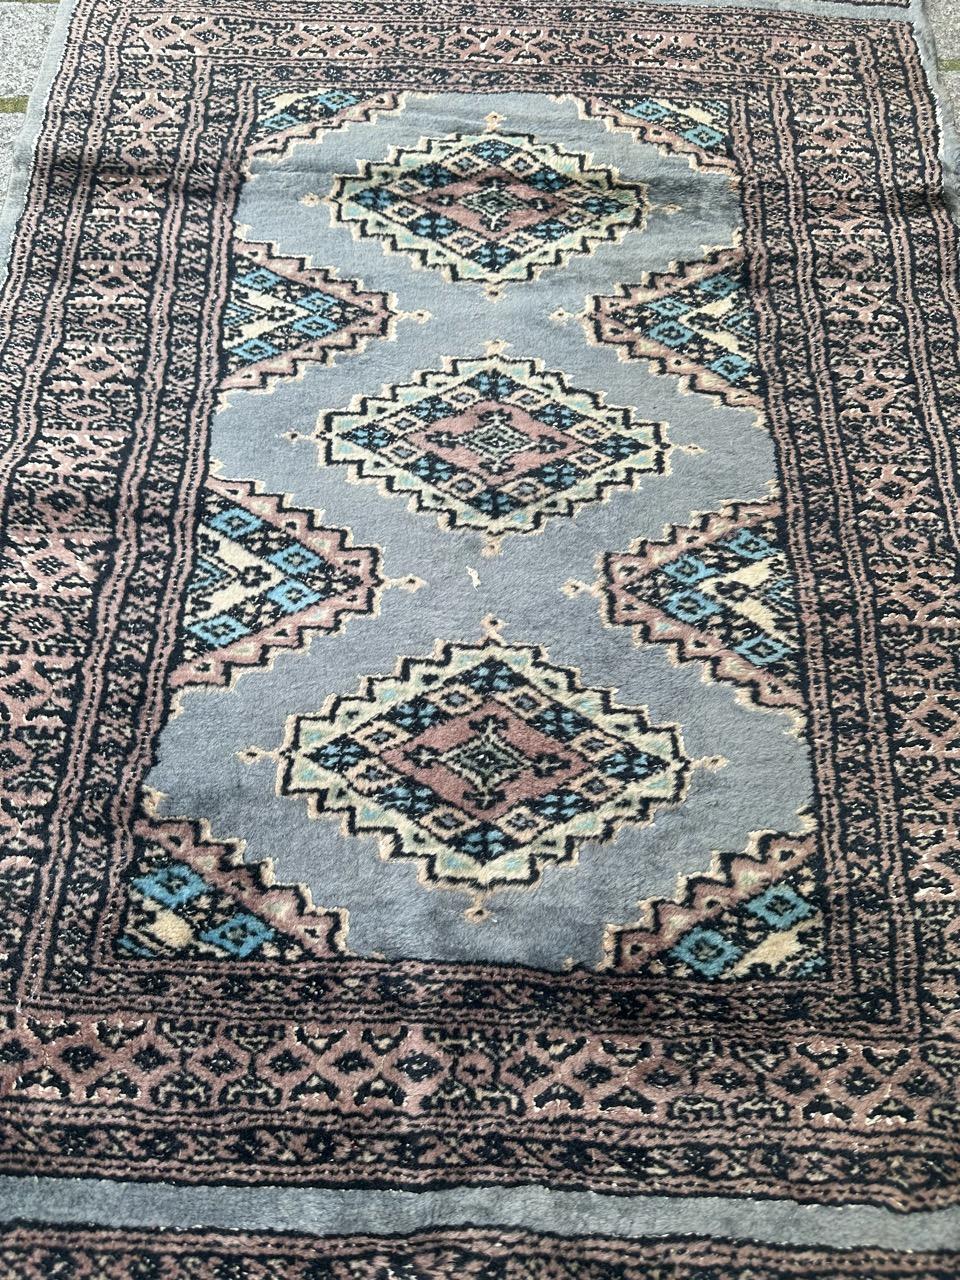 Schöner pakistanischer Teppich aus dem späten 20. Jahrhundert mit einem turkmenischen Stammesmuster und schönen Farben in Blaugrau, Rosa, Schwarz und Weiß. Vollständig handgeknüpft mit Wolle und Seide auf Baumwollgrund.

✨✨✨
